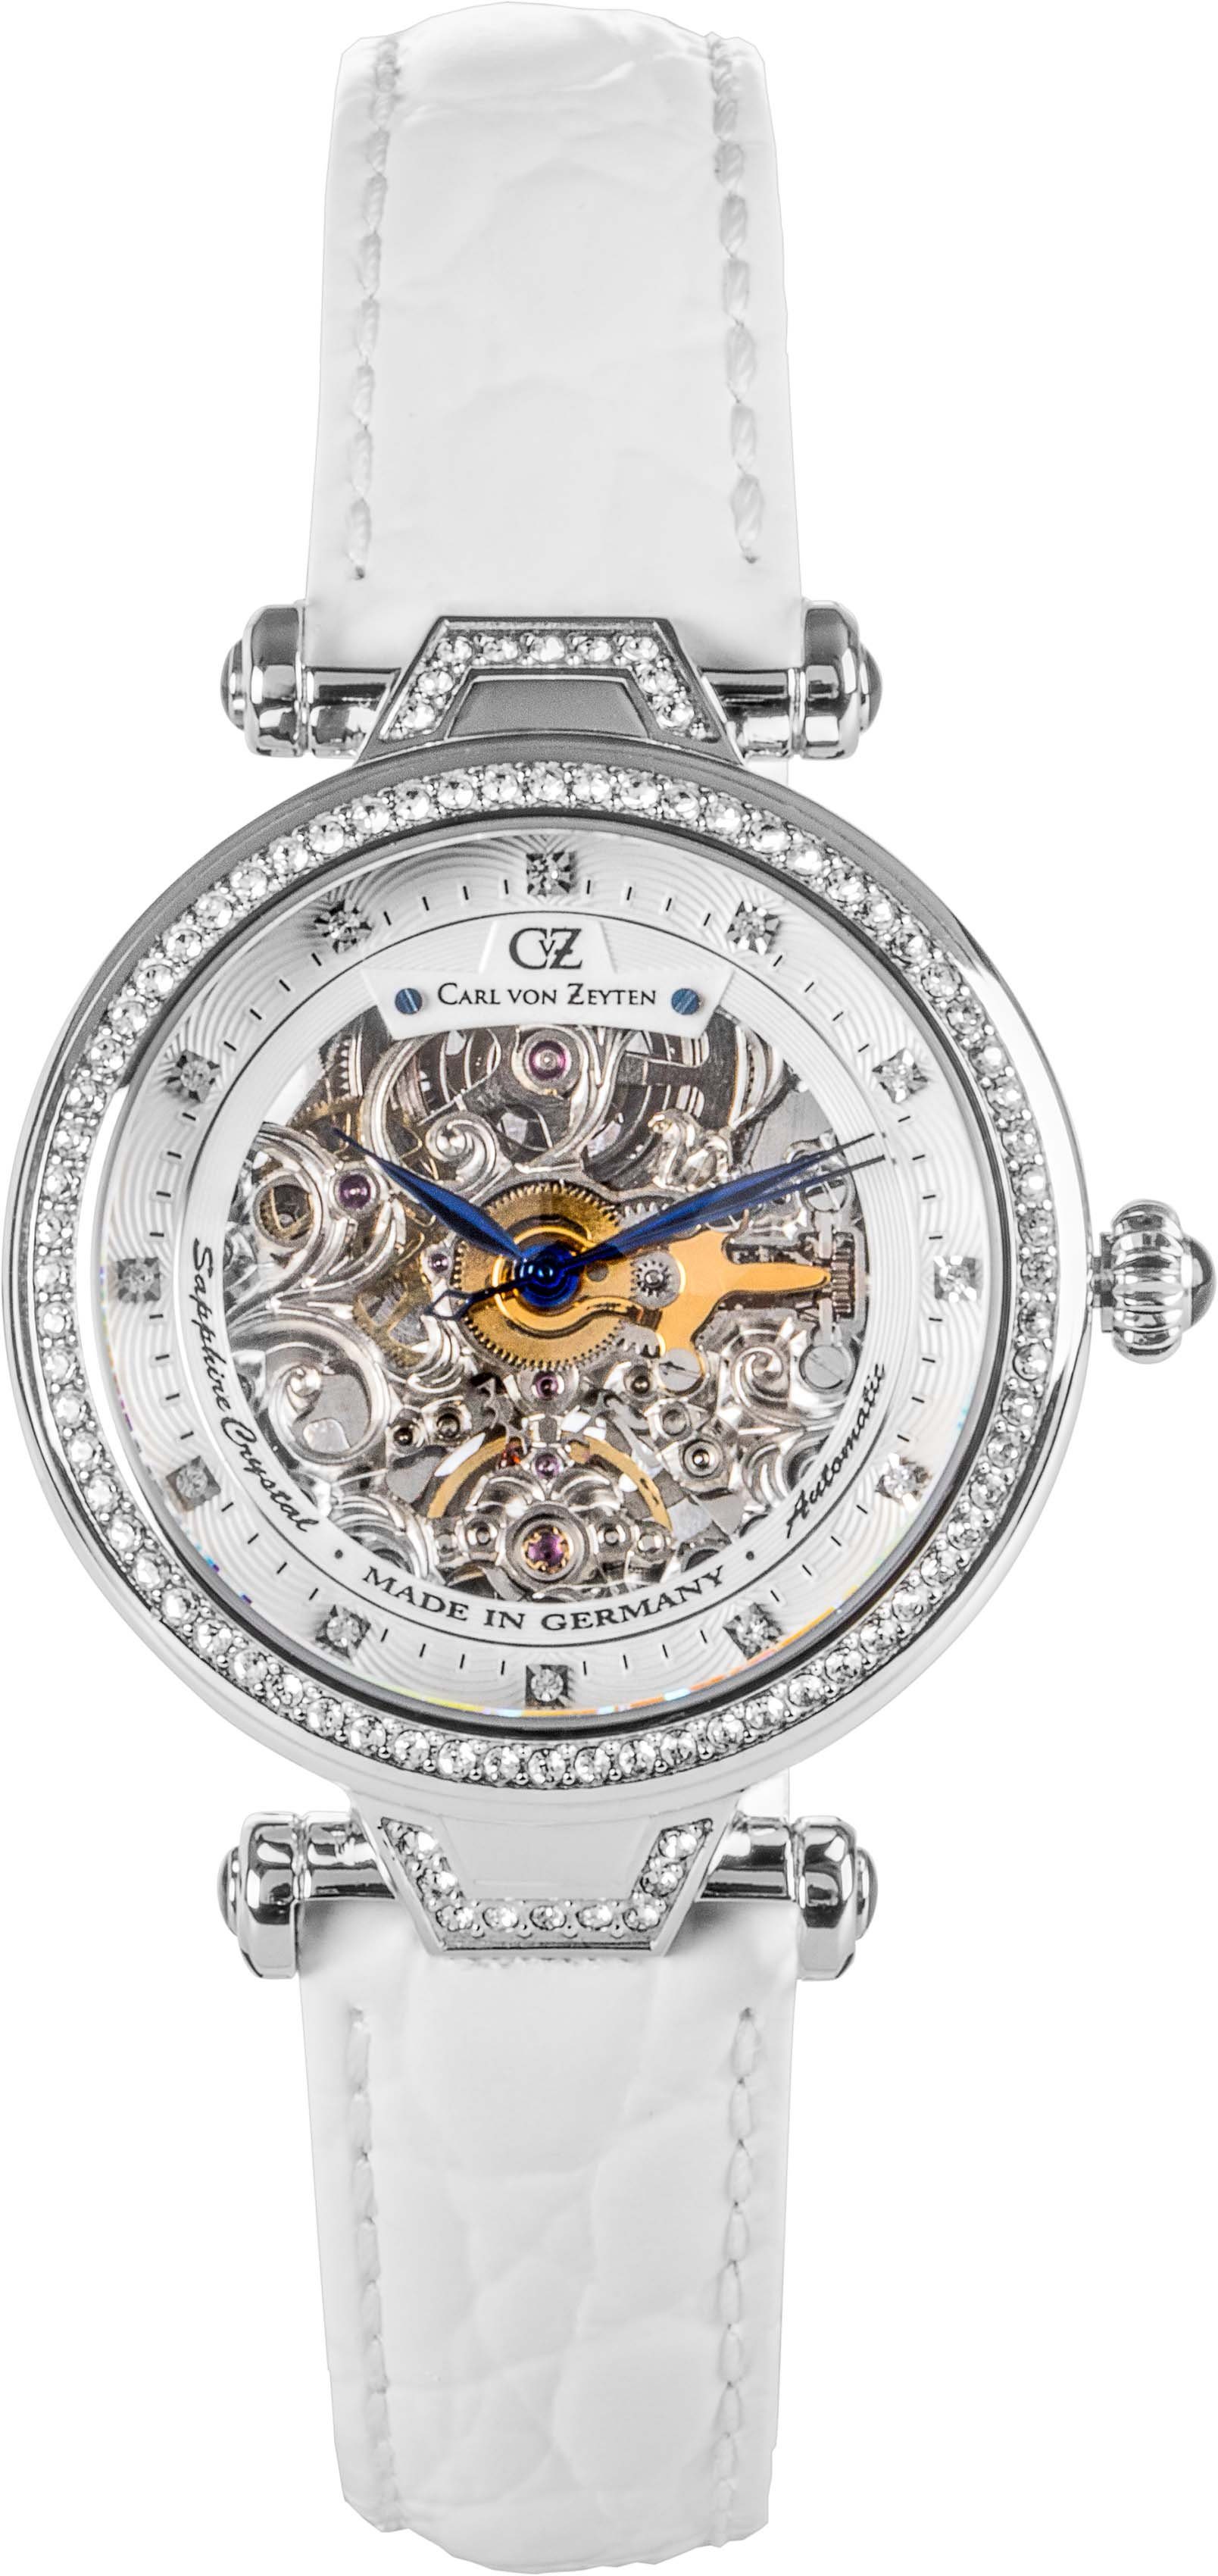 Carl von Zeyten Automatikuhr Gütenbach, CVZ0071WHS, Armbanduhr, Damenuhr, Saphirglas, Made in Germany, Mechanische Uhr